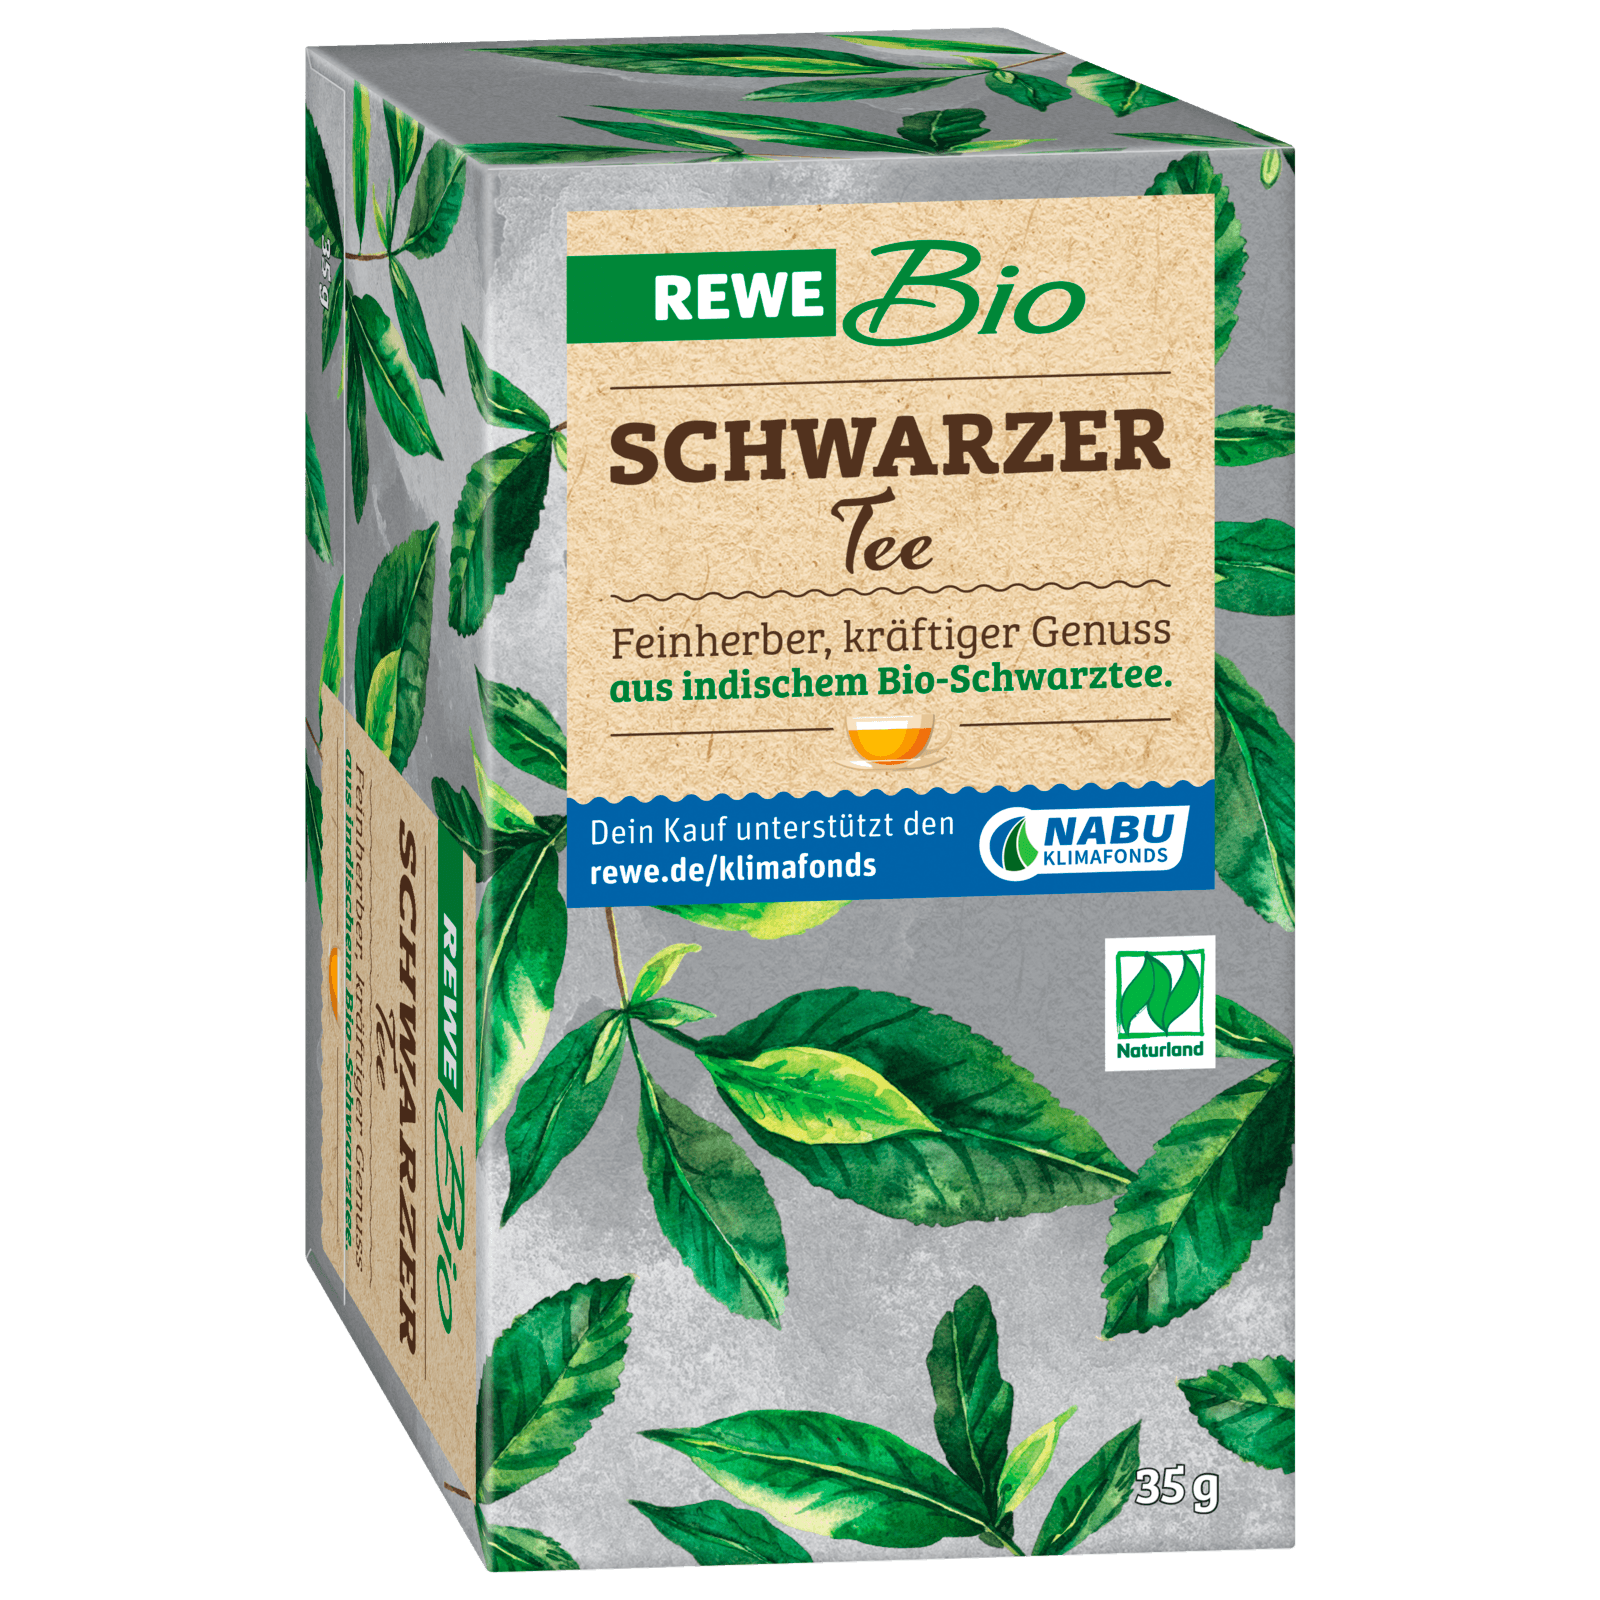 REWE Bio Schwarzer Tee 35g, 20 Beutel